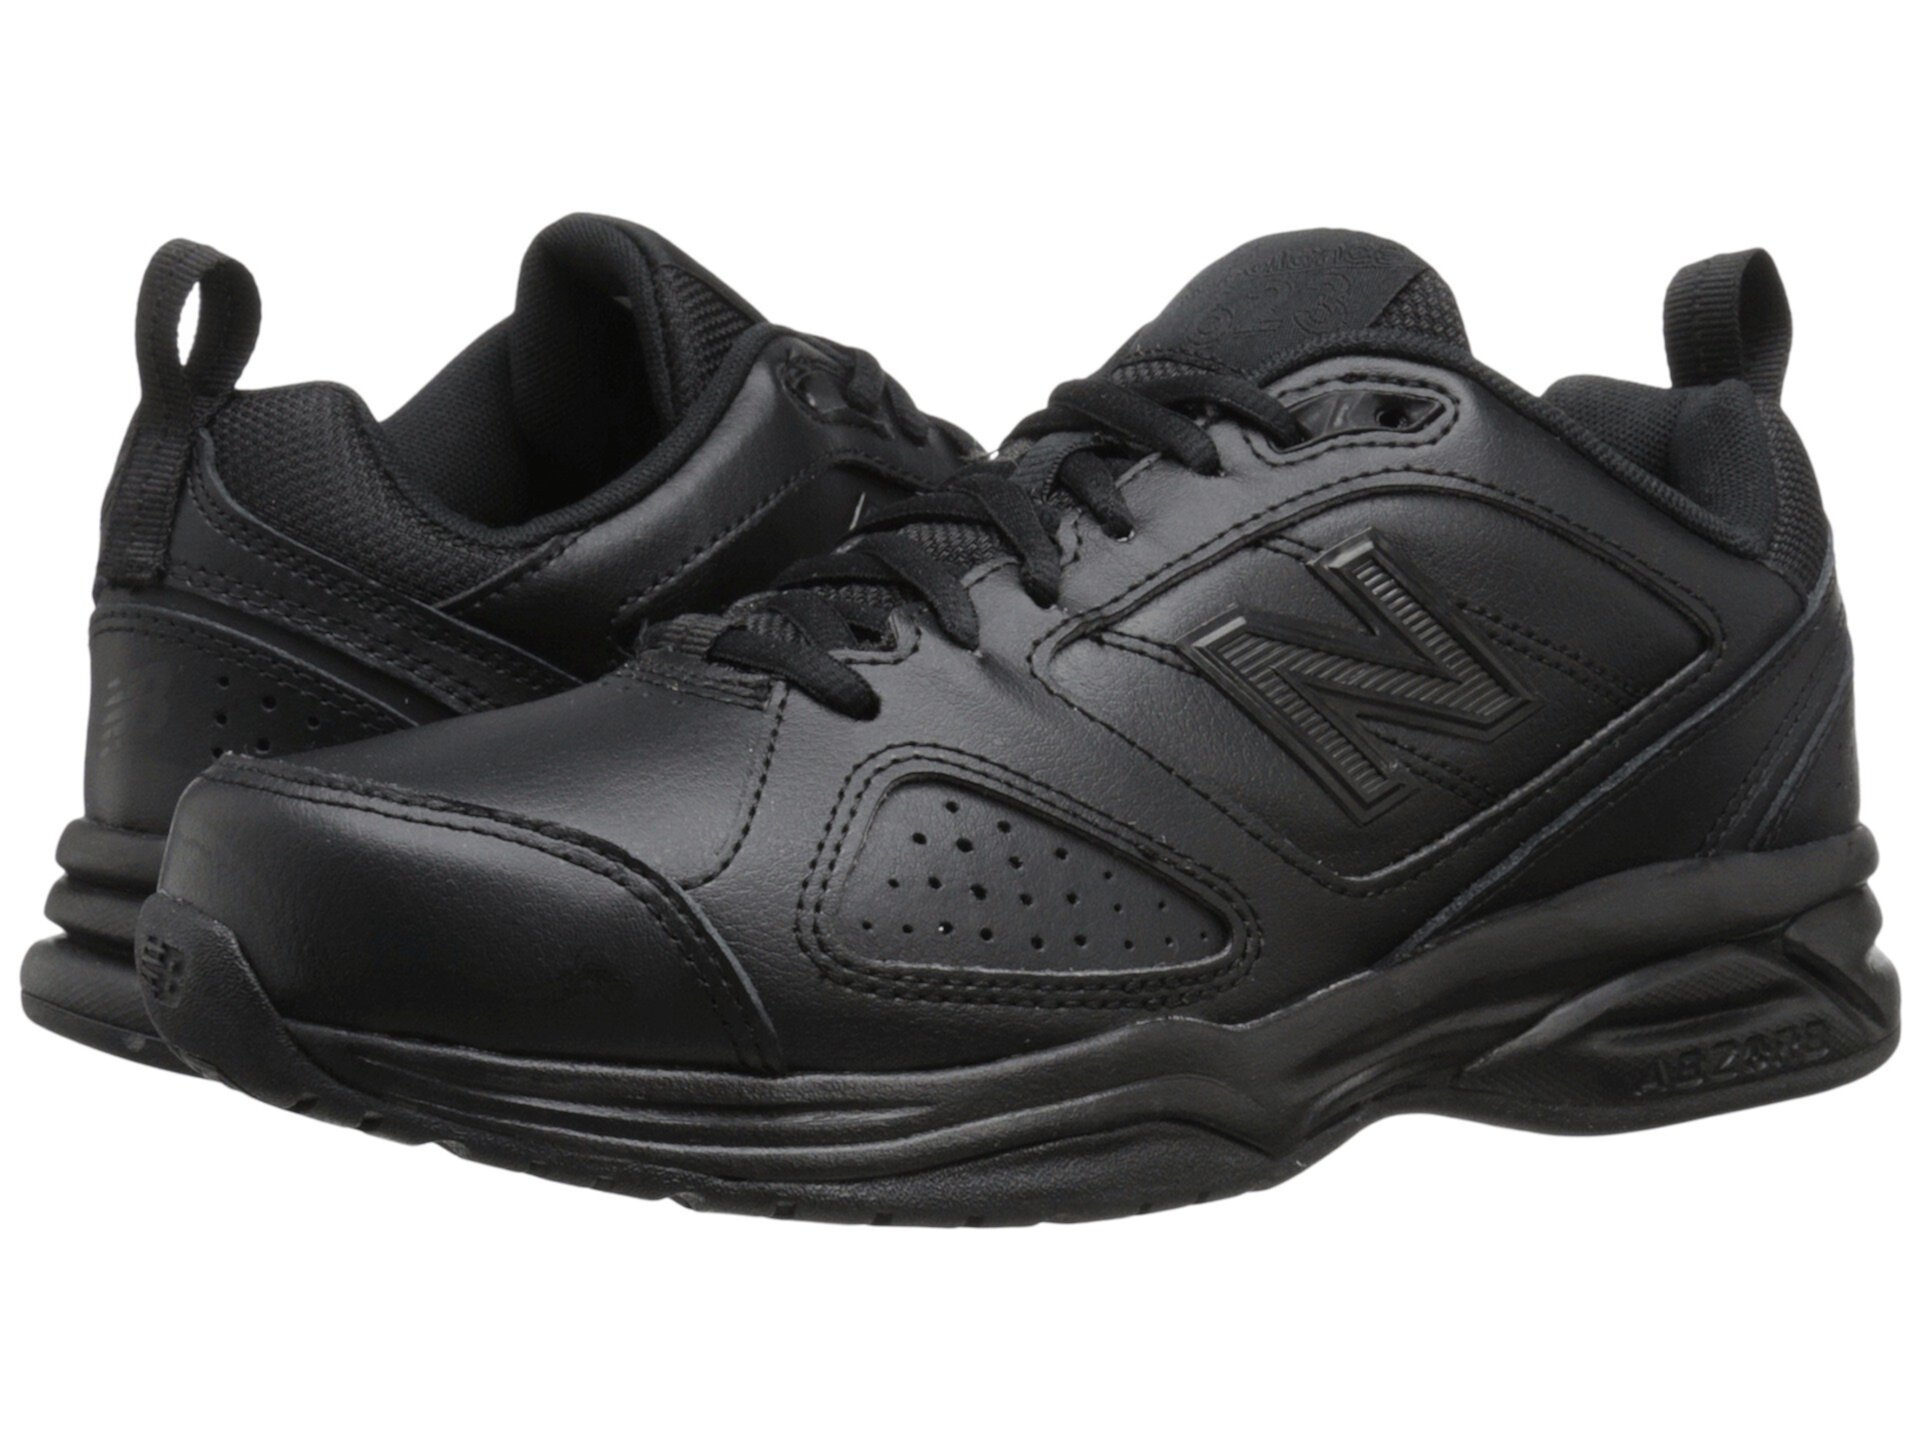 Спортивные ботинки New Balance WX623v3 для женщин New Balance